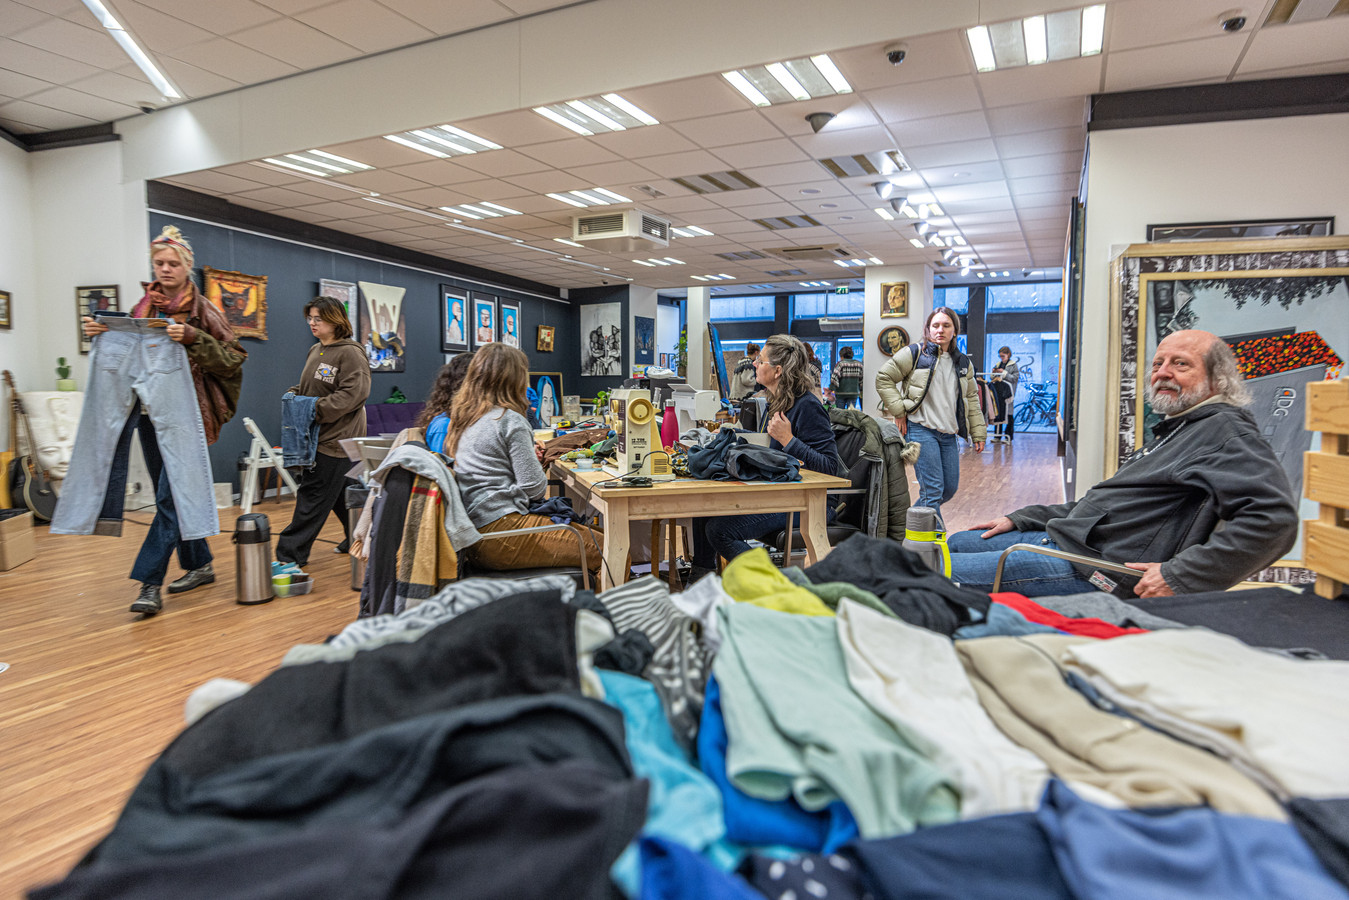 ethisch Uiterlijk sofa Klimaatbeweging laat in Zwolle tegengeluid horen op Green Friday: 'Op  andere manier goedkope kleding kopen' | Foto | tubantia.nl